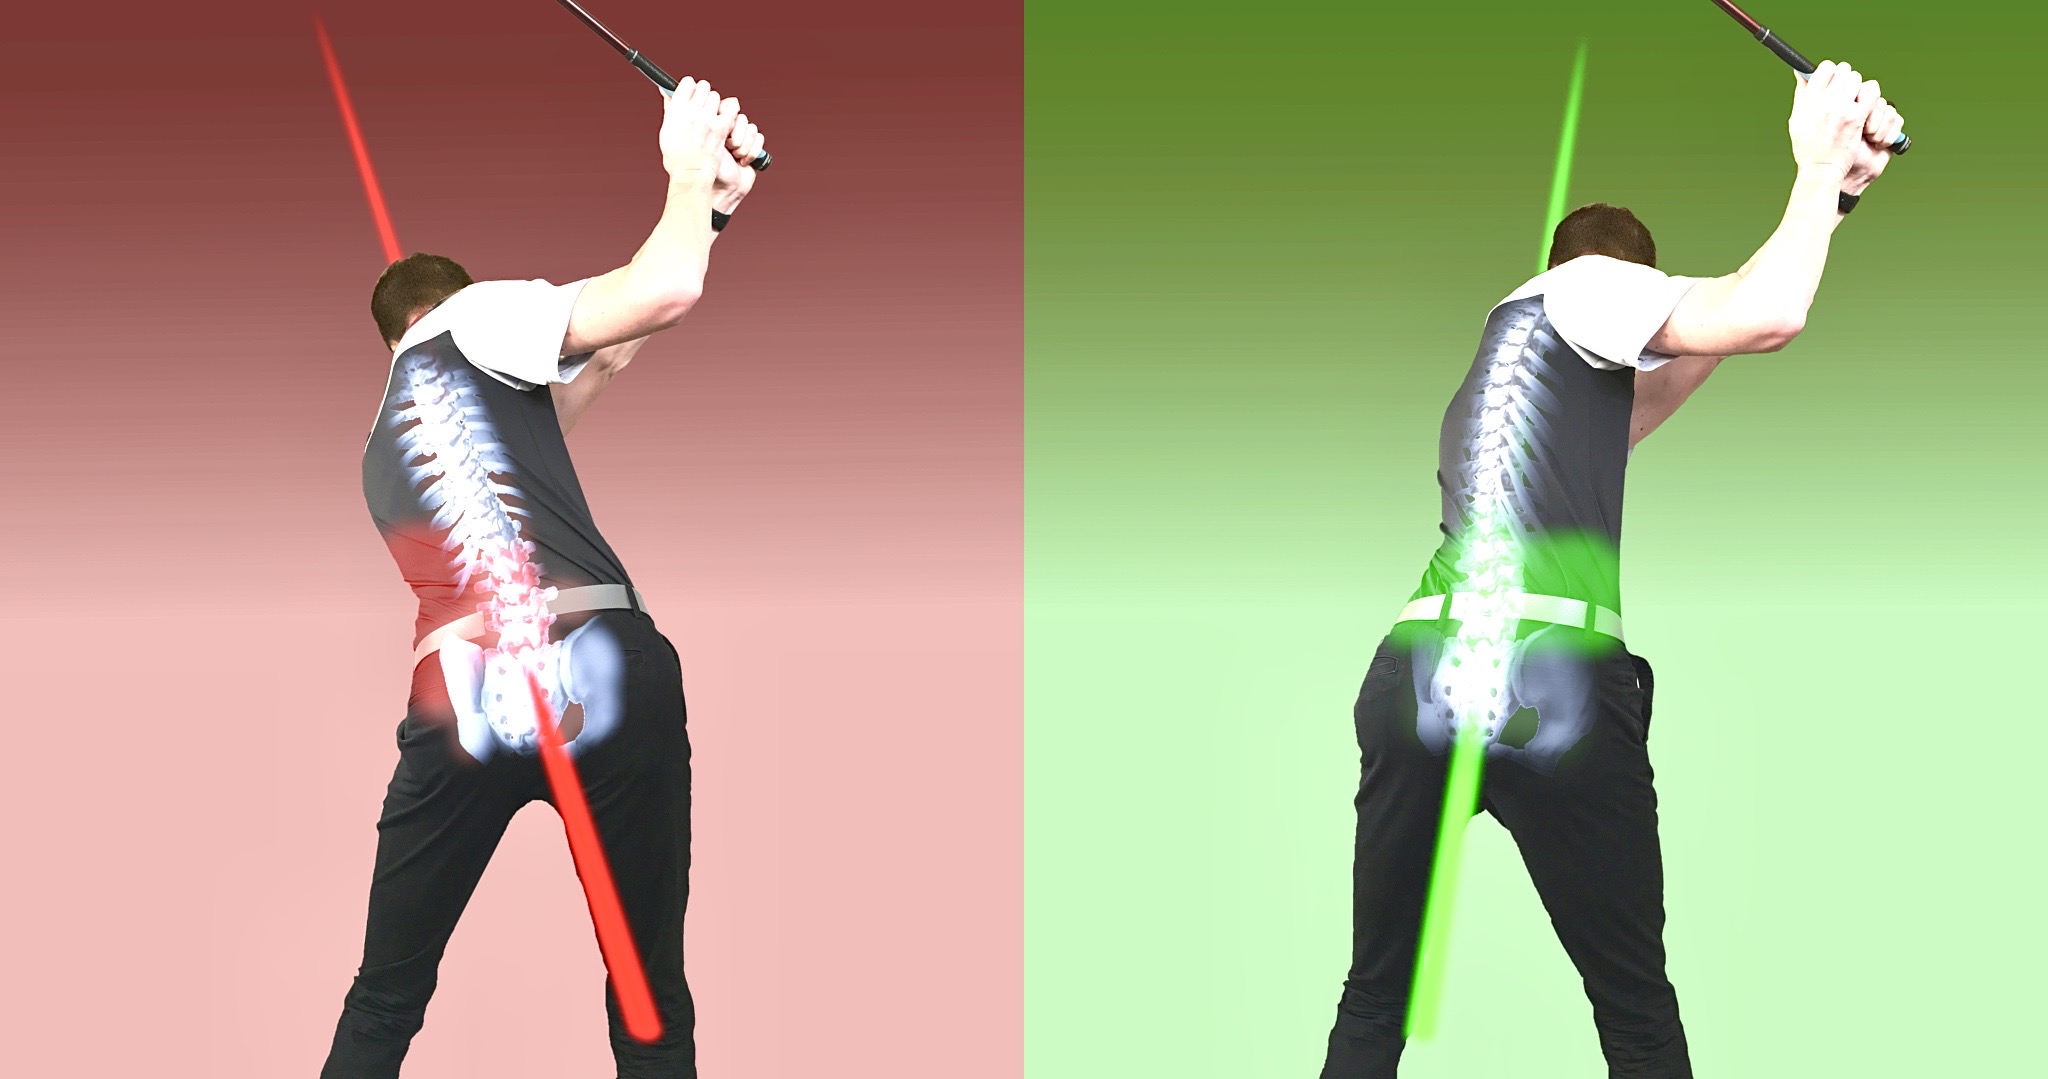 En rouge, un exemple de l’inversion de l’angle de la colonne vertébrale au sommet de l’élan comparativement à la photo en vert, qui démontre une posture adéquate.